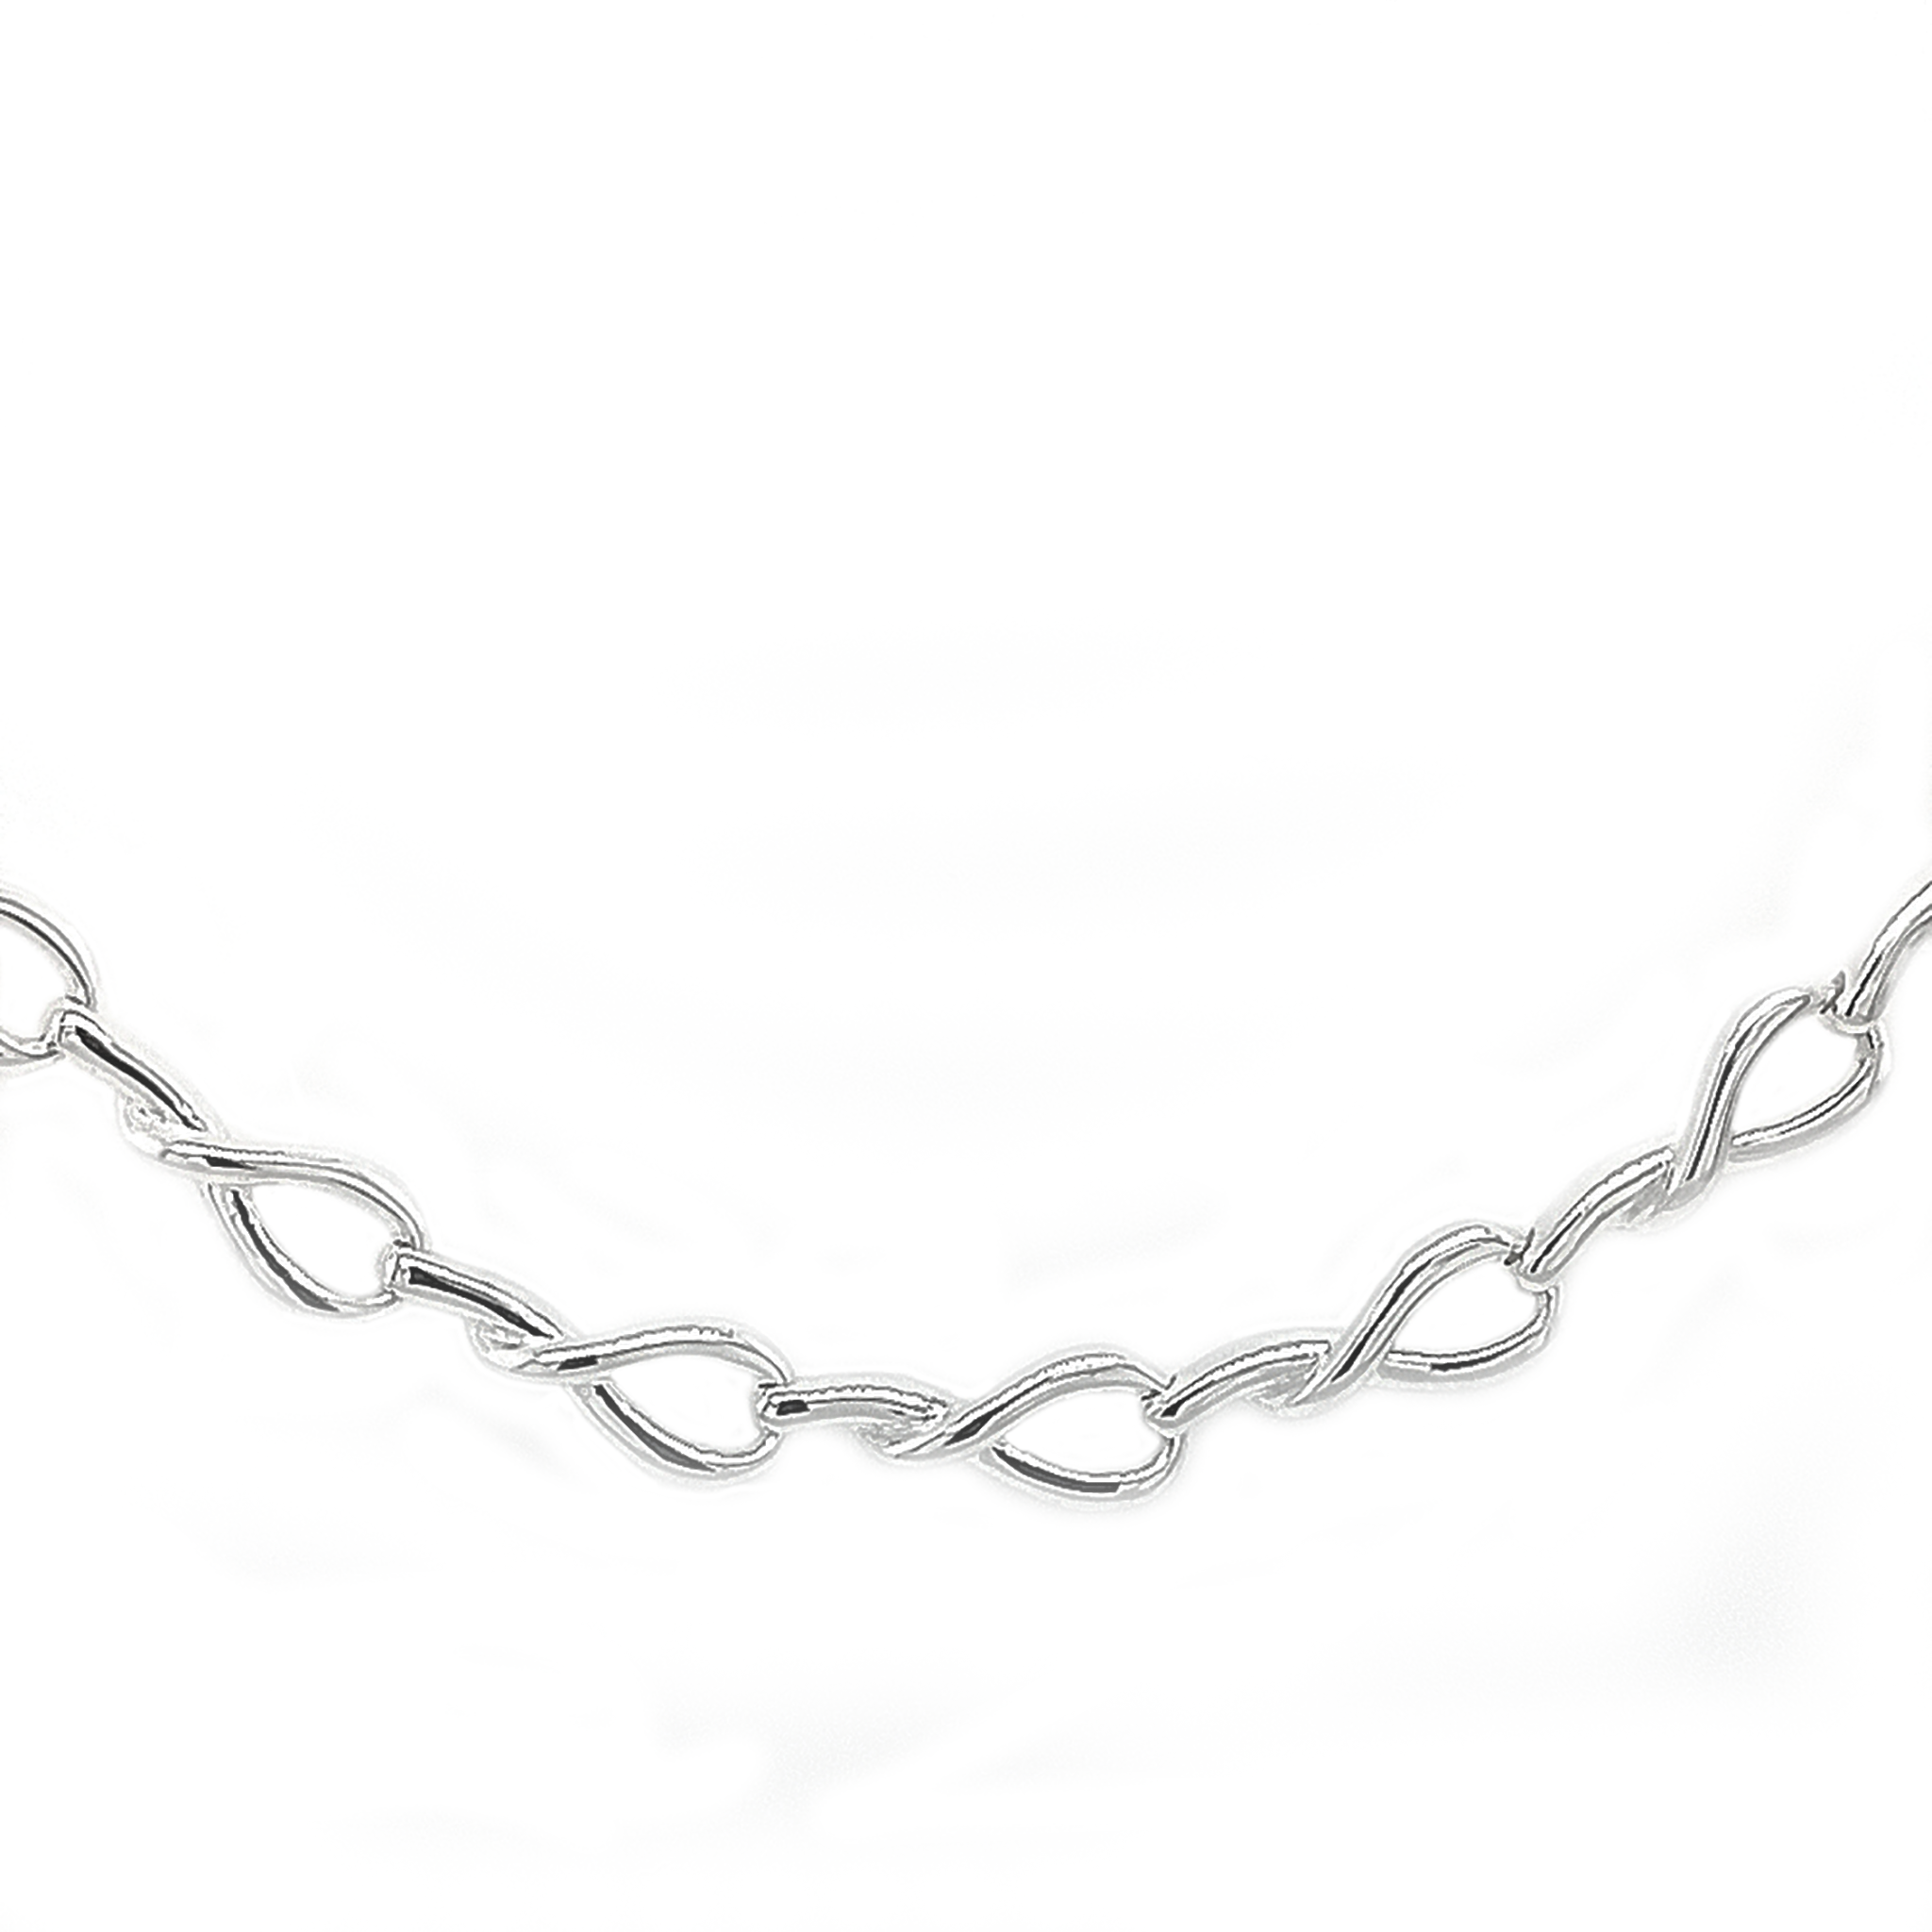 Silver Lasso Collar Necklace